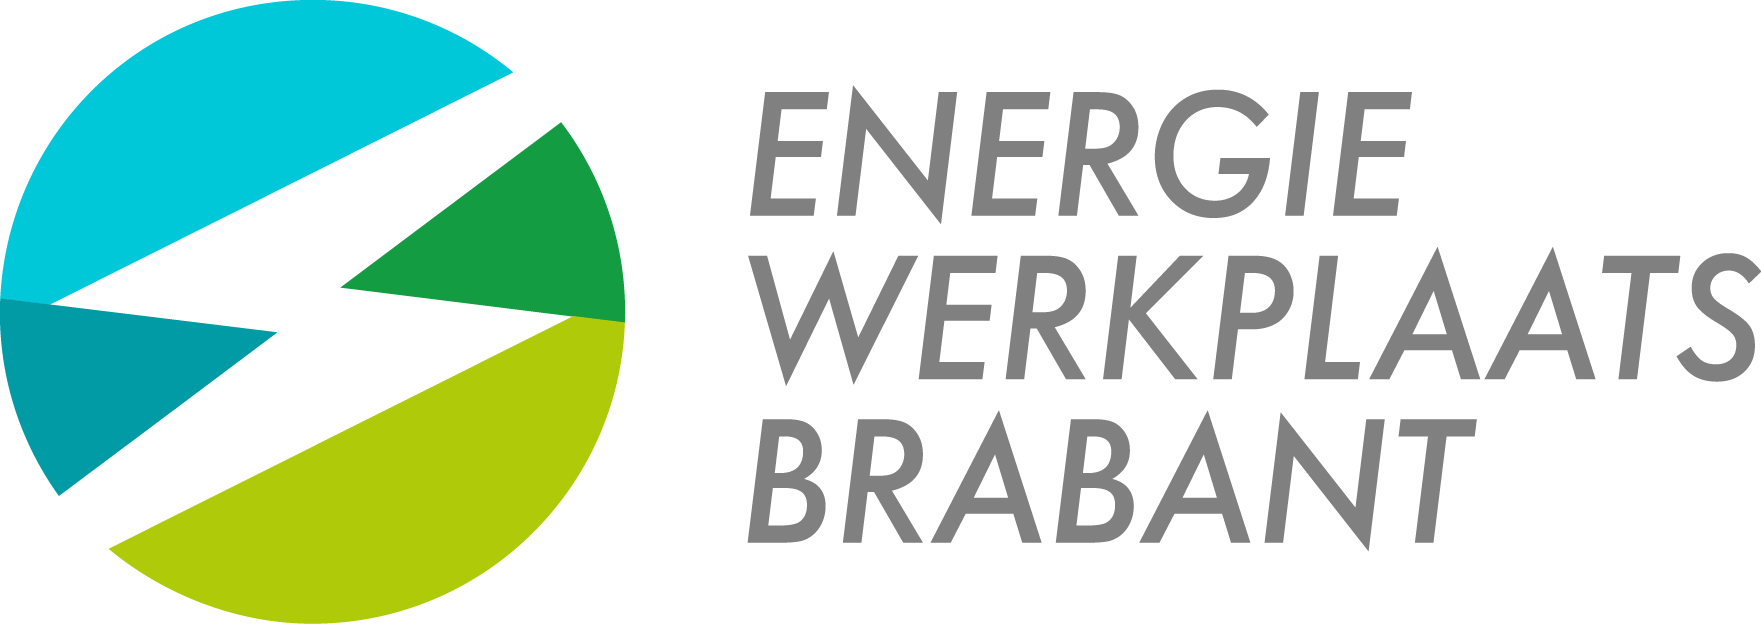 (c) Energiewerkplaatsbrabant.nl